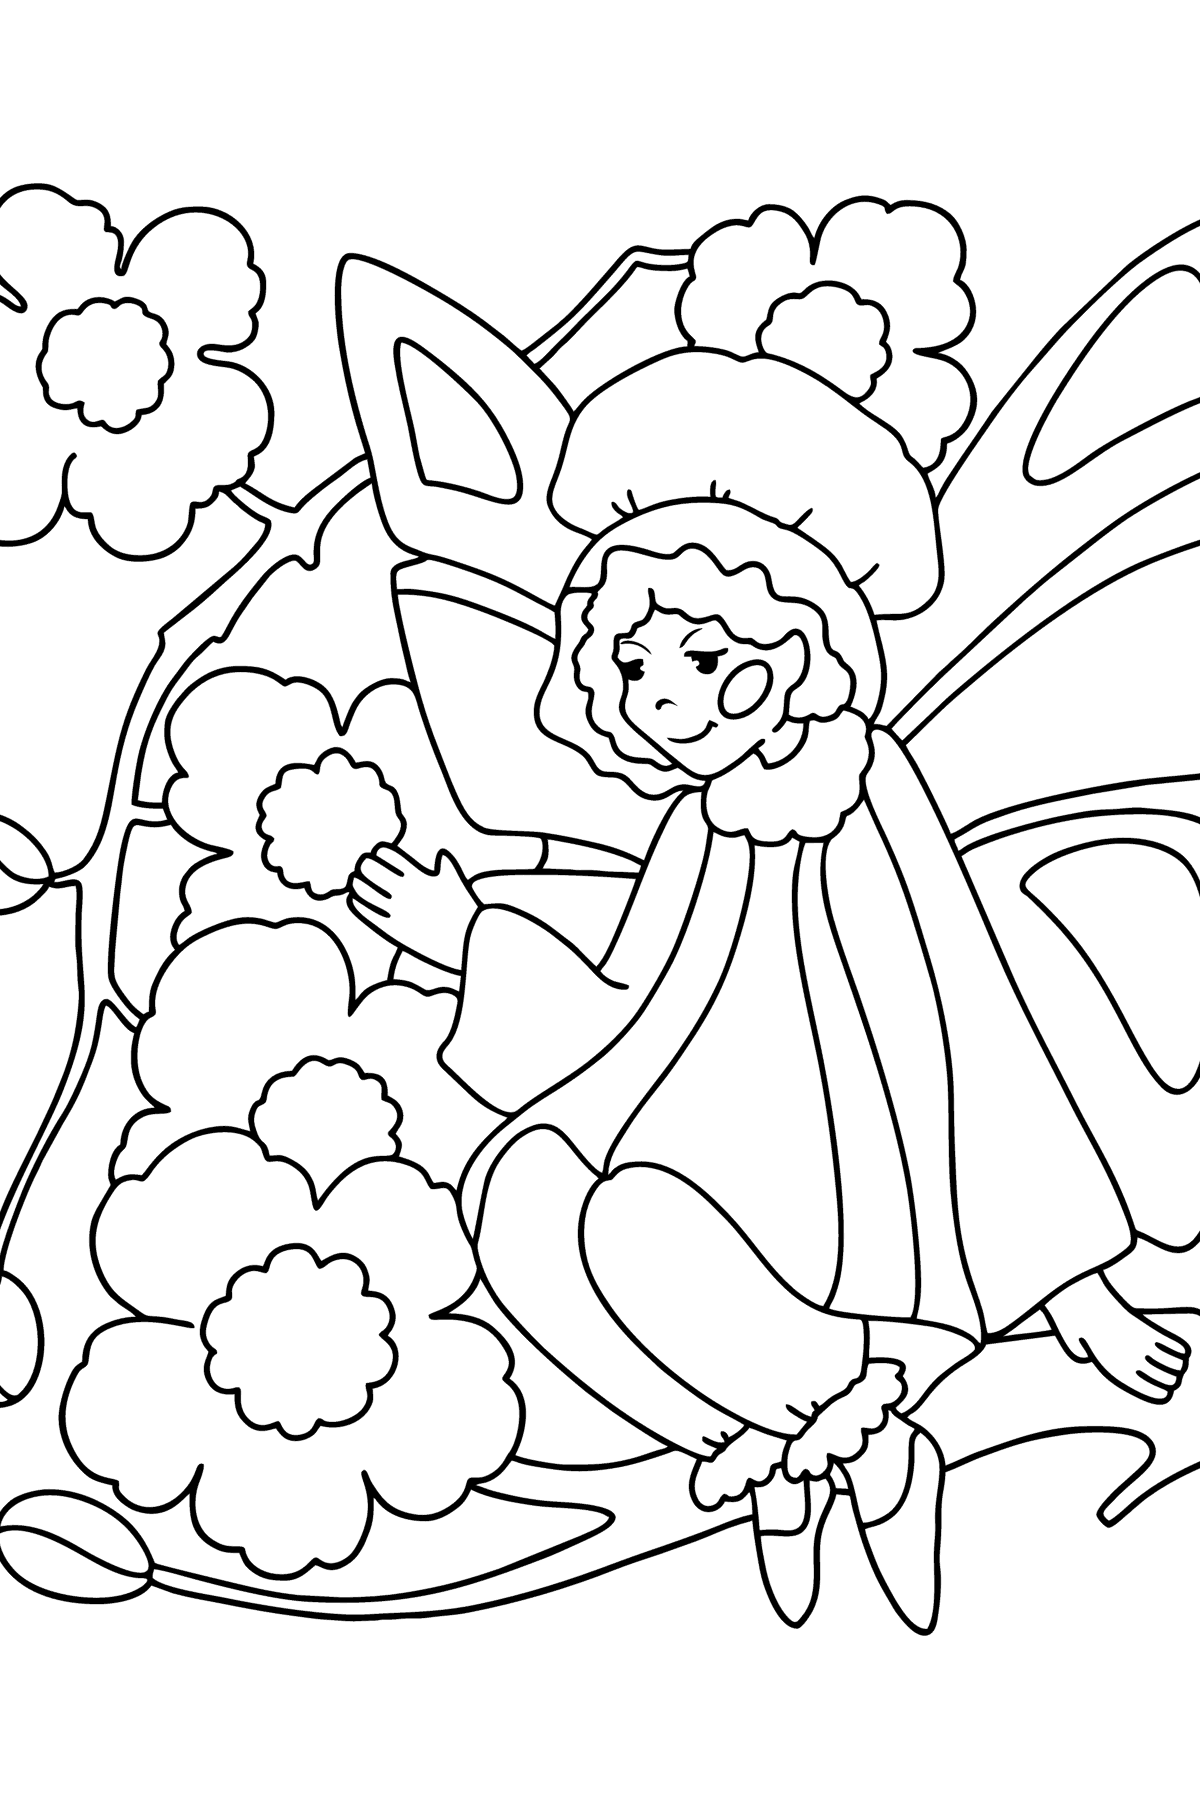 Desenho de Fada em uma flor para colorir - Imagens para Colorir para Crianças